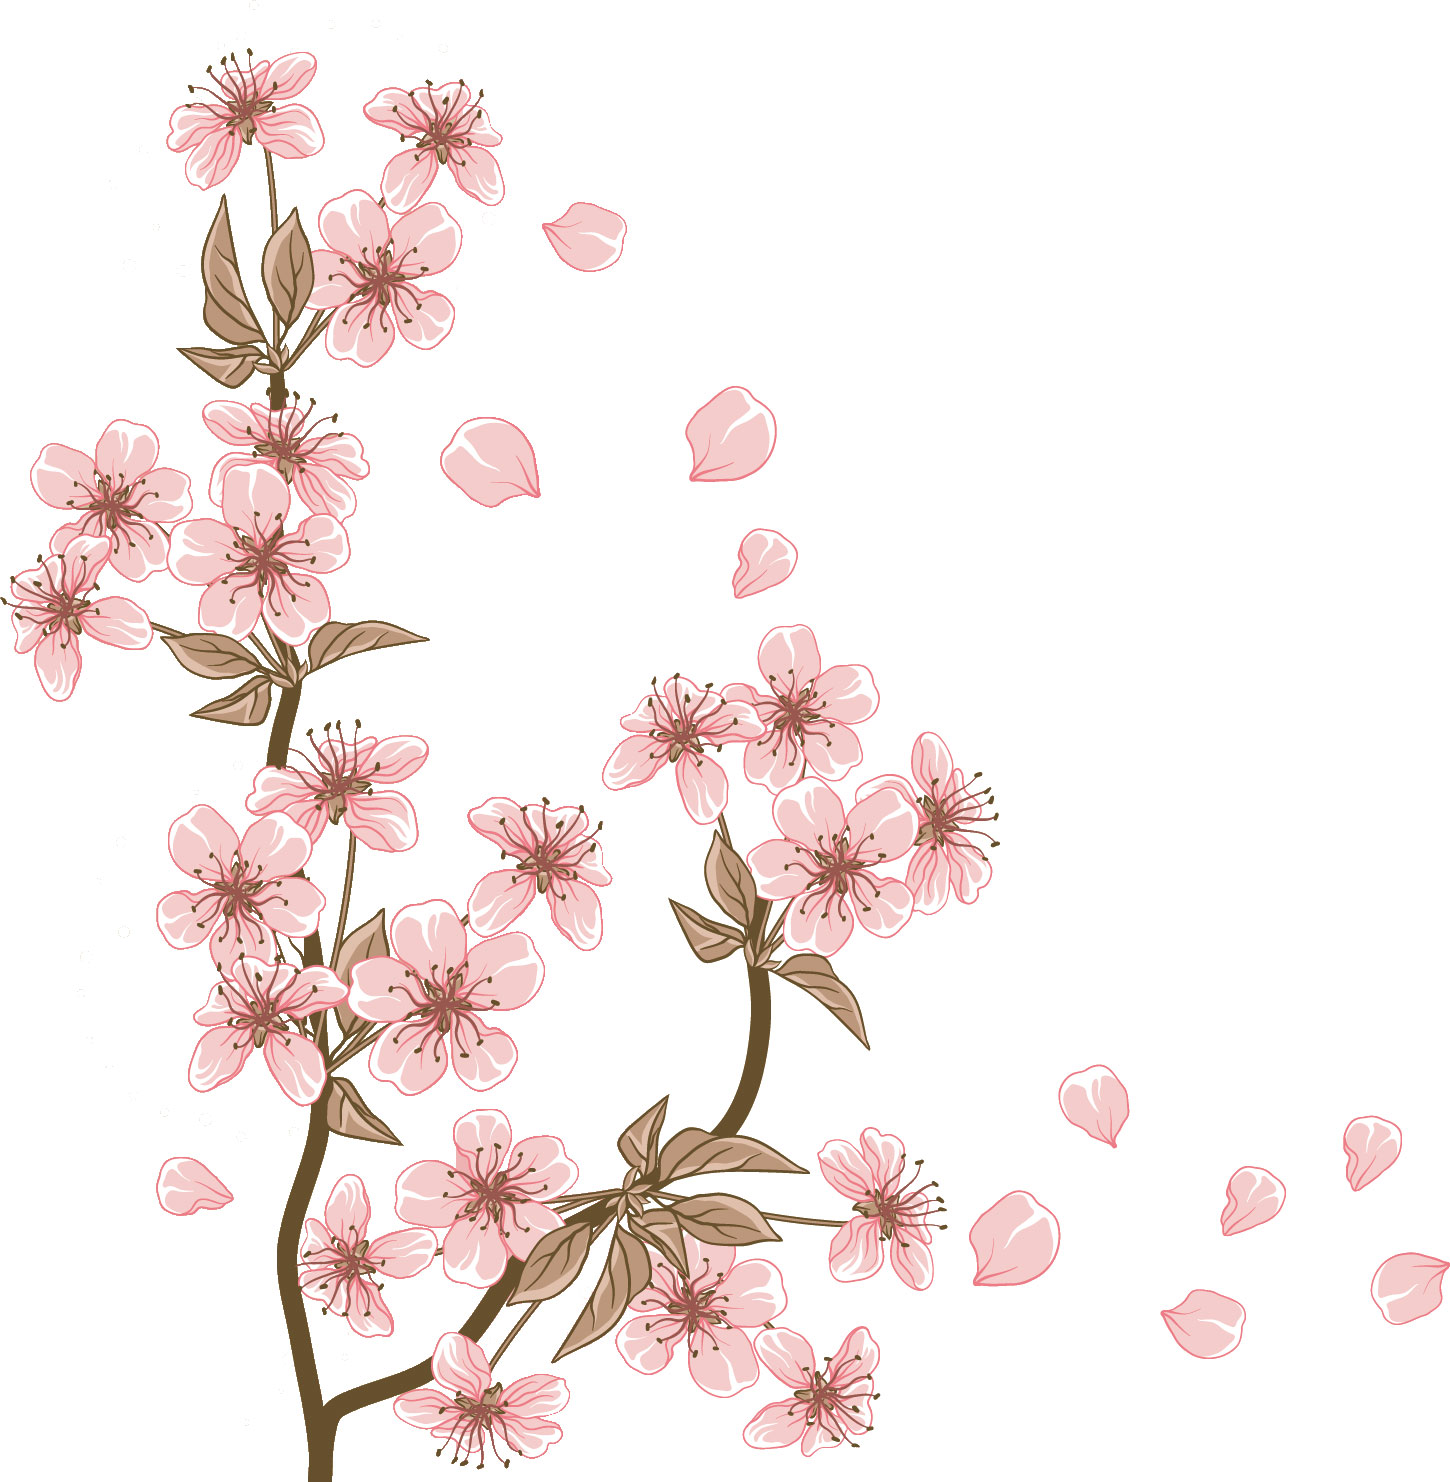 綺麗なフリーイラスト 春 美しい花の画像